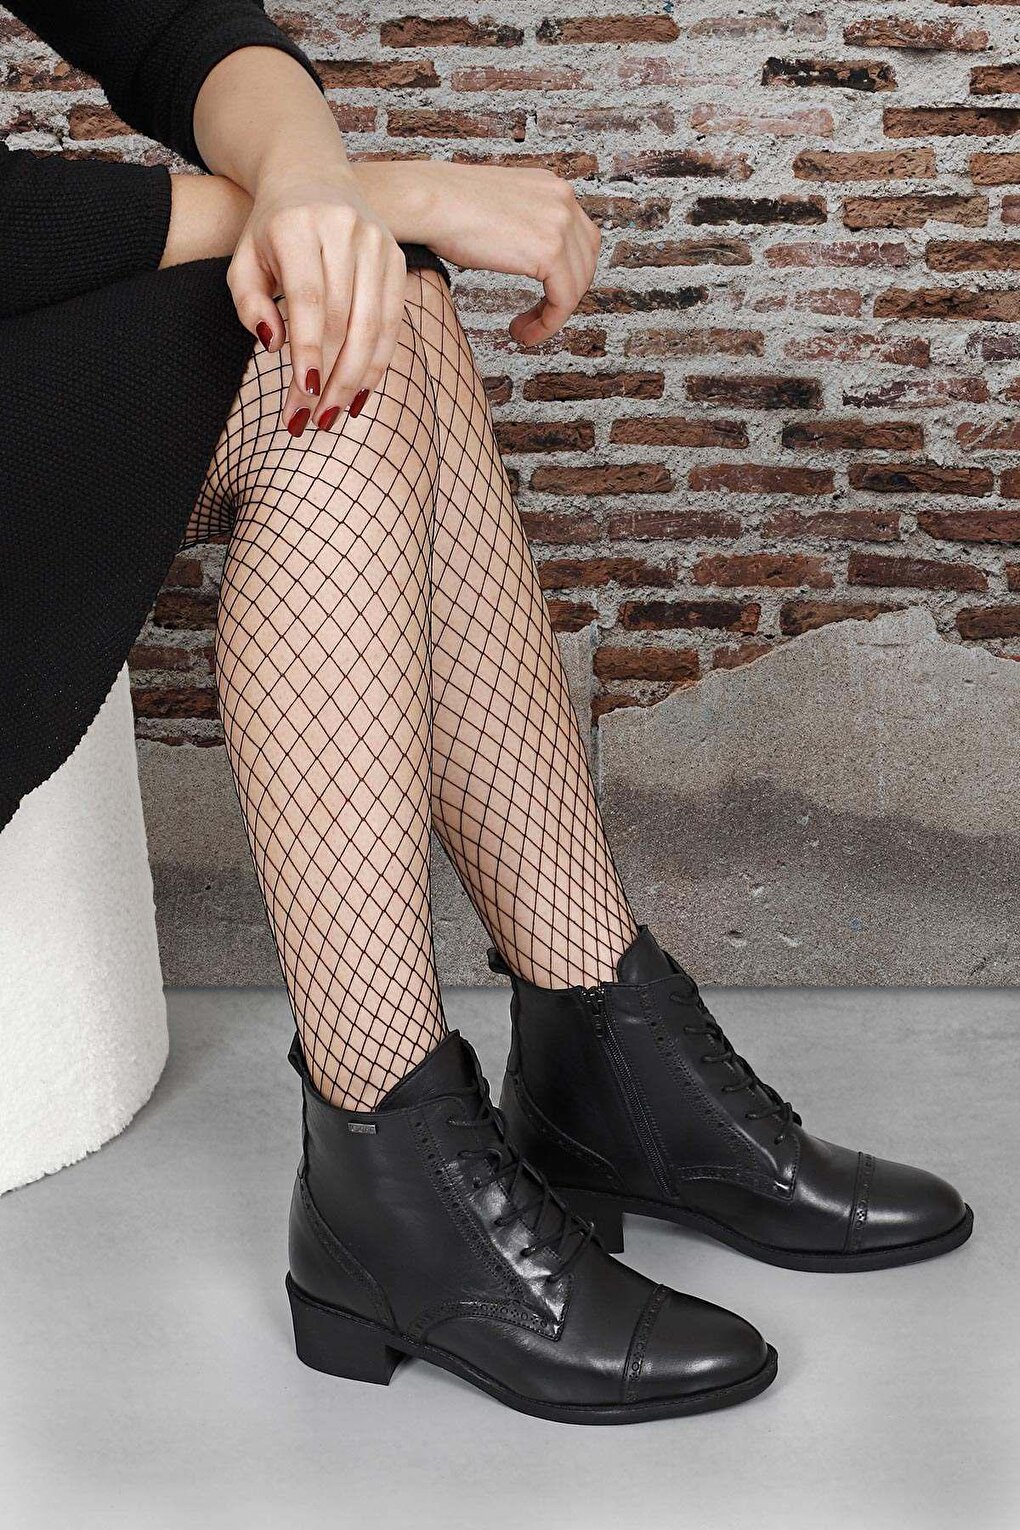 Женские повседневные ботинки из натуральной кожи с круглым носком, резиновой подошвой, каблуком и молнией на шнуровке 50419 GÖNDERİ(R), черный